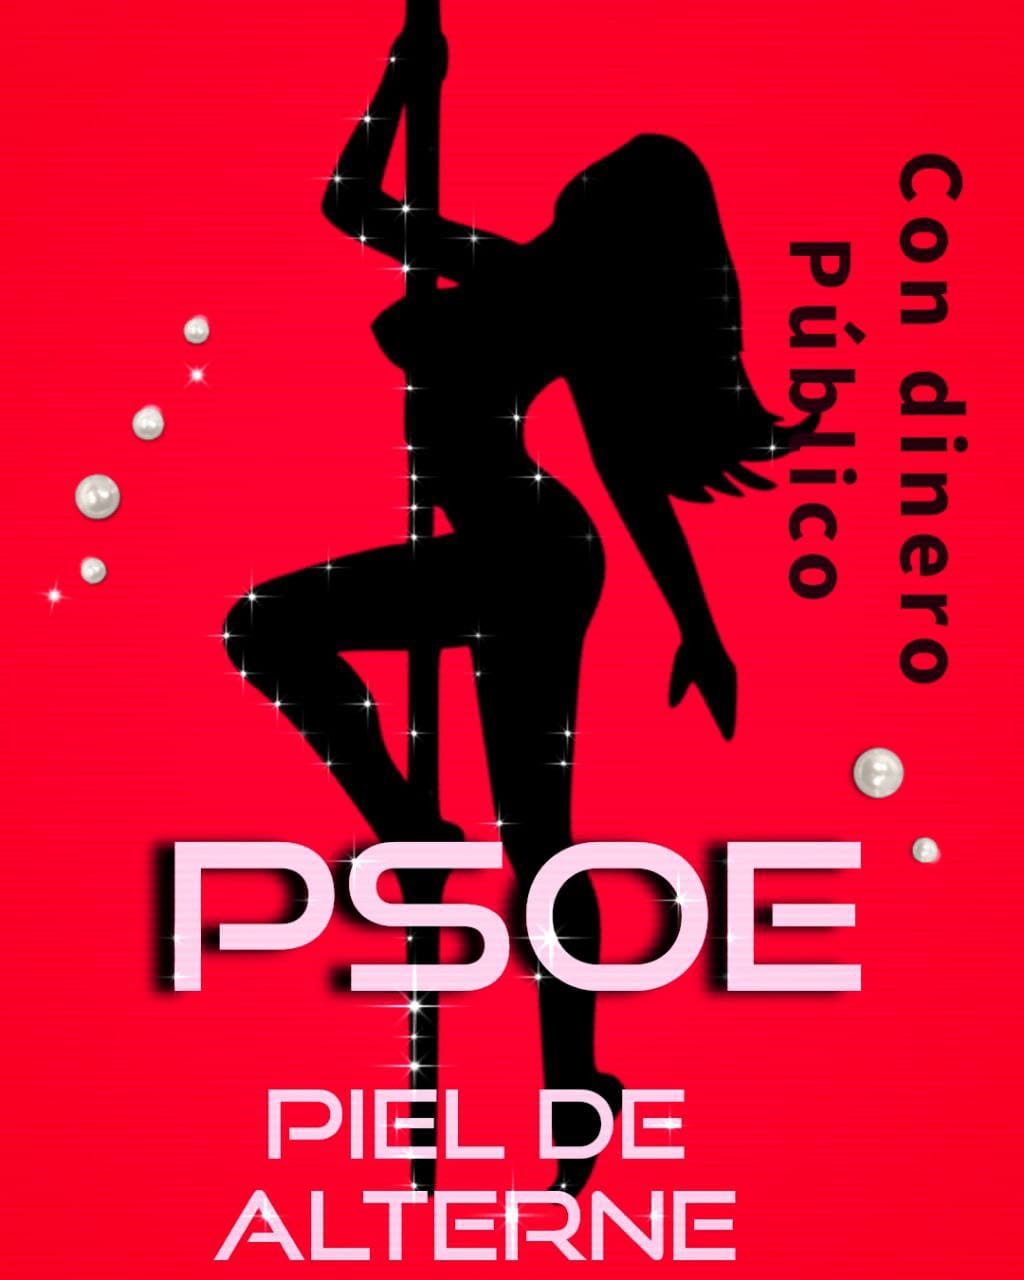 Una de las muchas imágenes que vinculan al PSOE con los prostíbulos, distribuidas por las redes después del escándalo de "Tito Berni", donde diputados socaislstas se atiborraban de prostitutas y drogas.